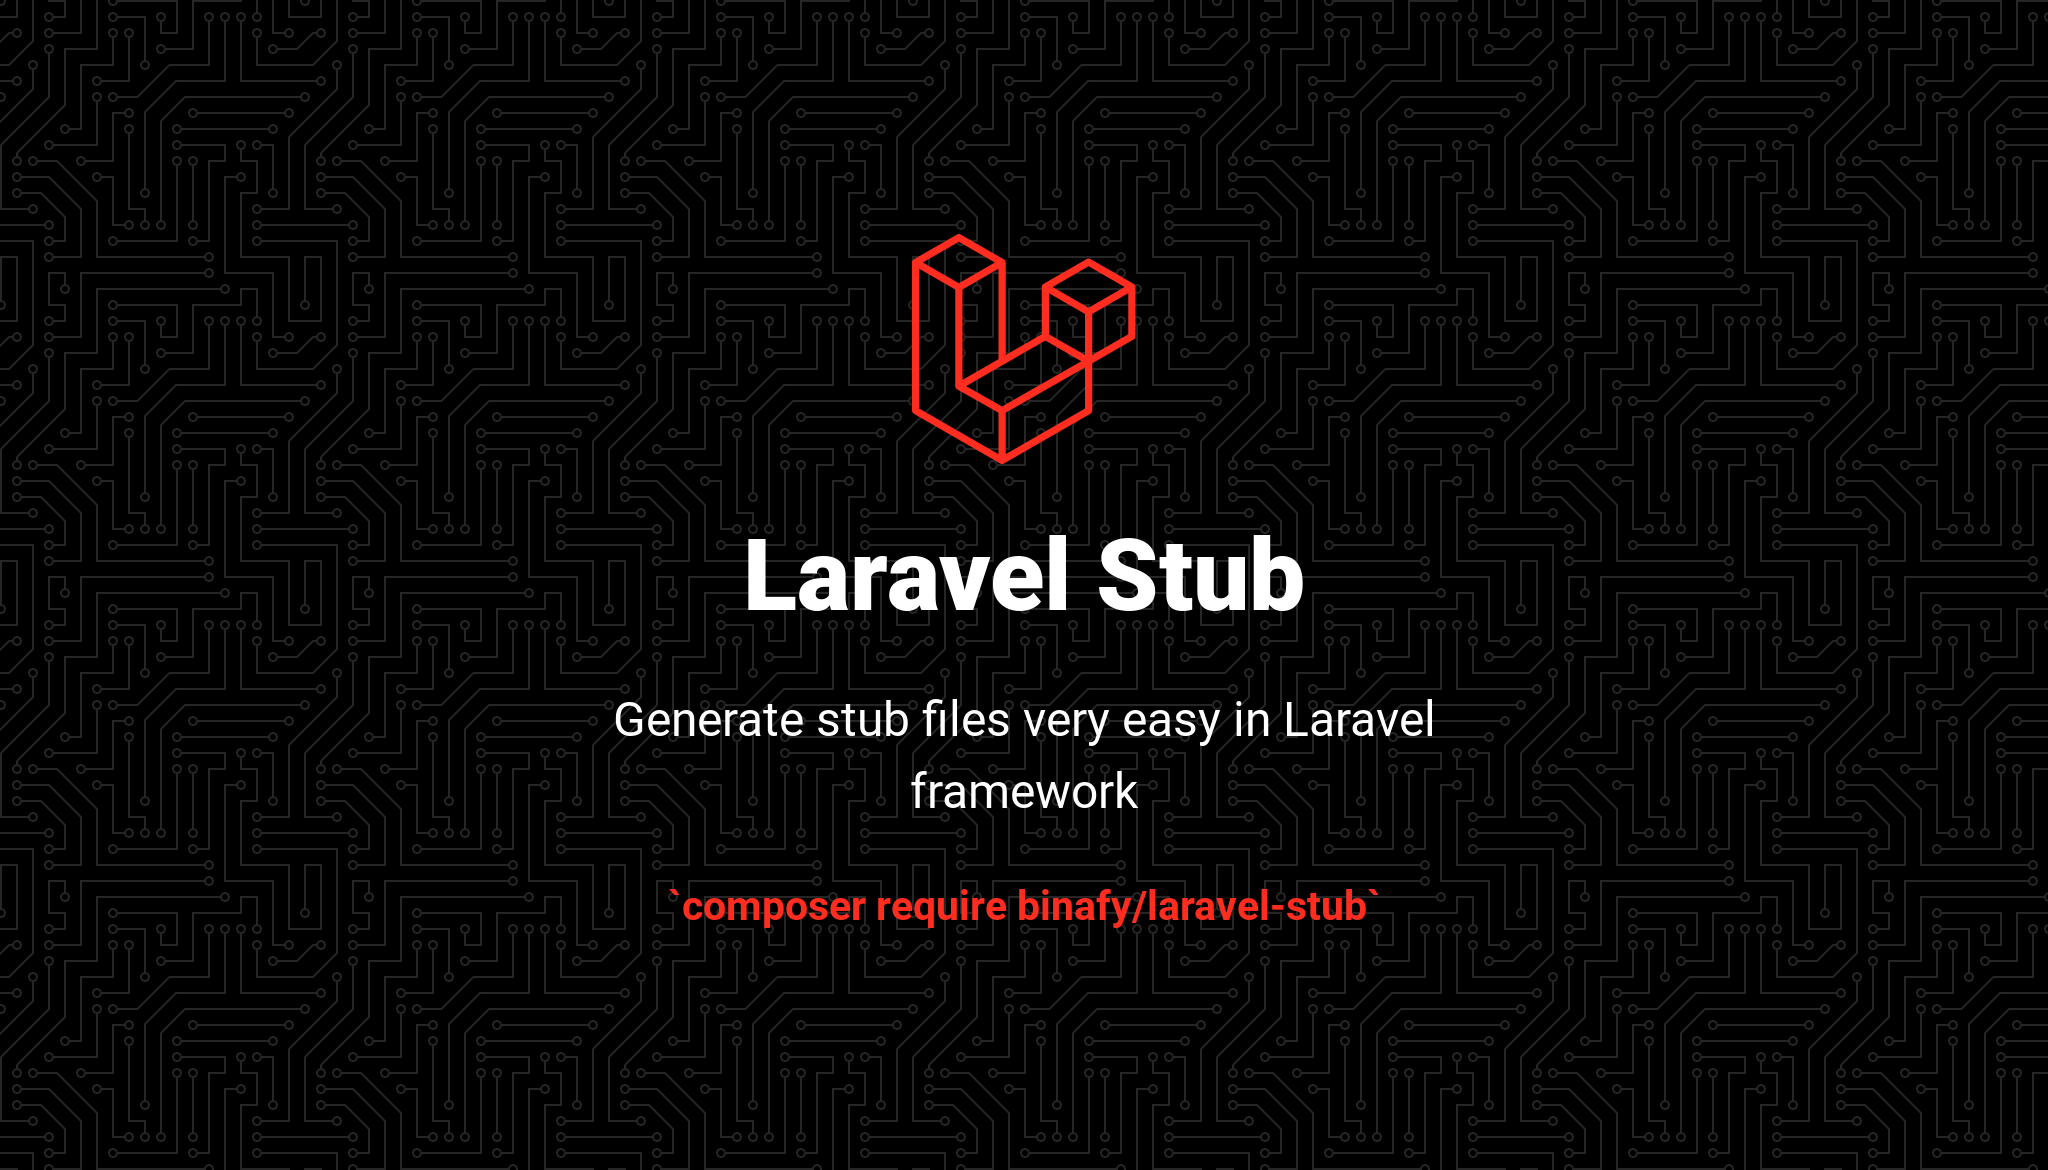 laravel-stub-banner